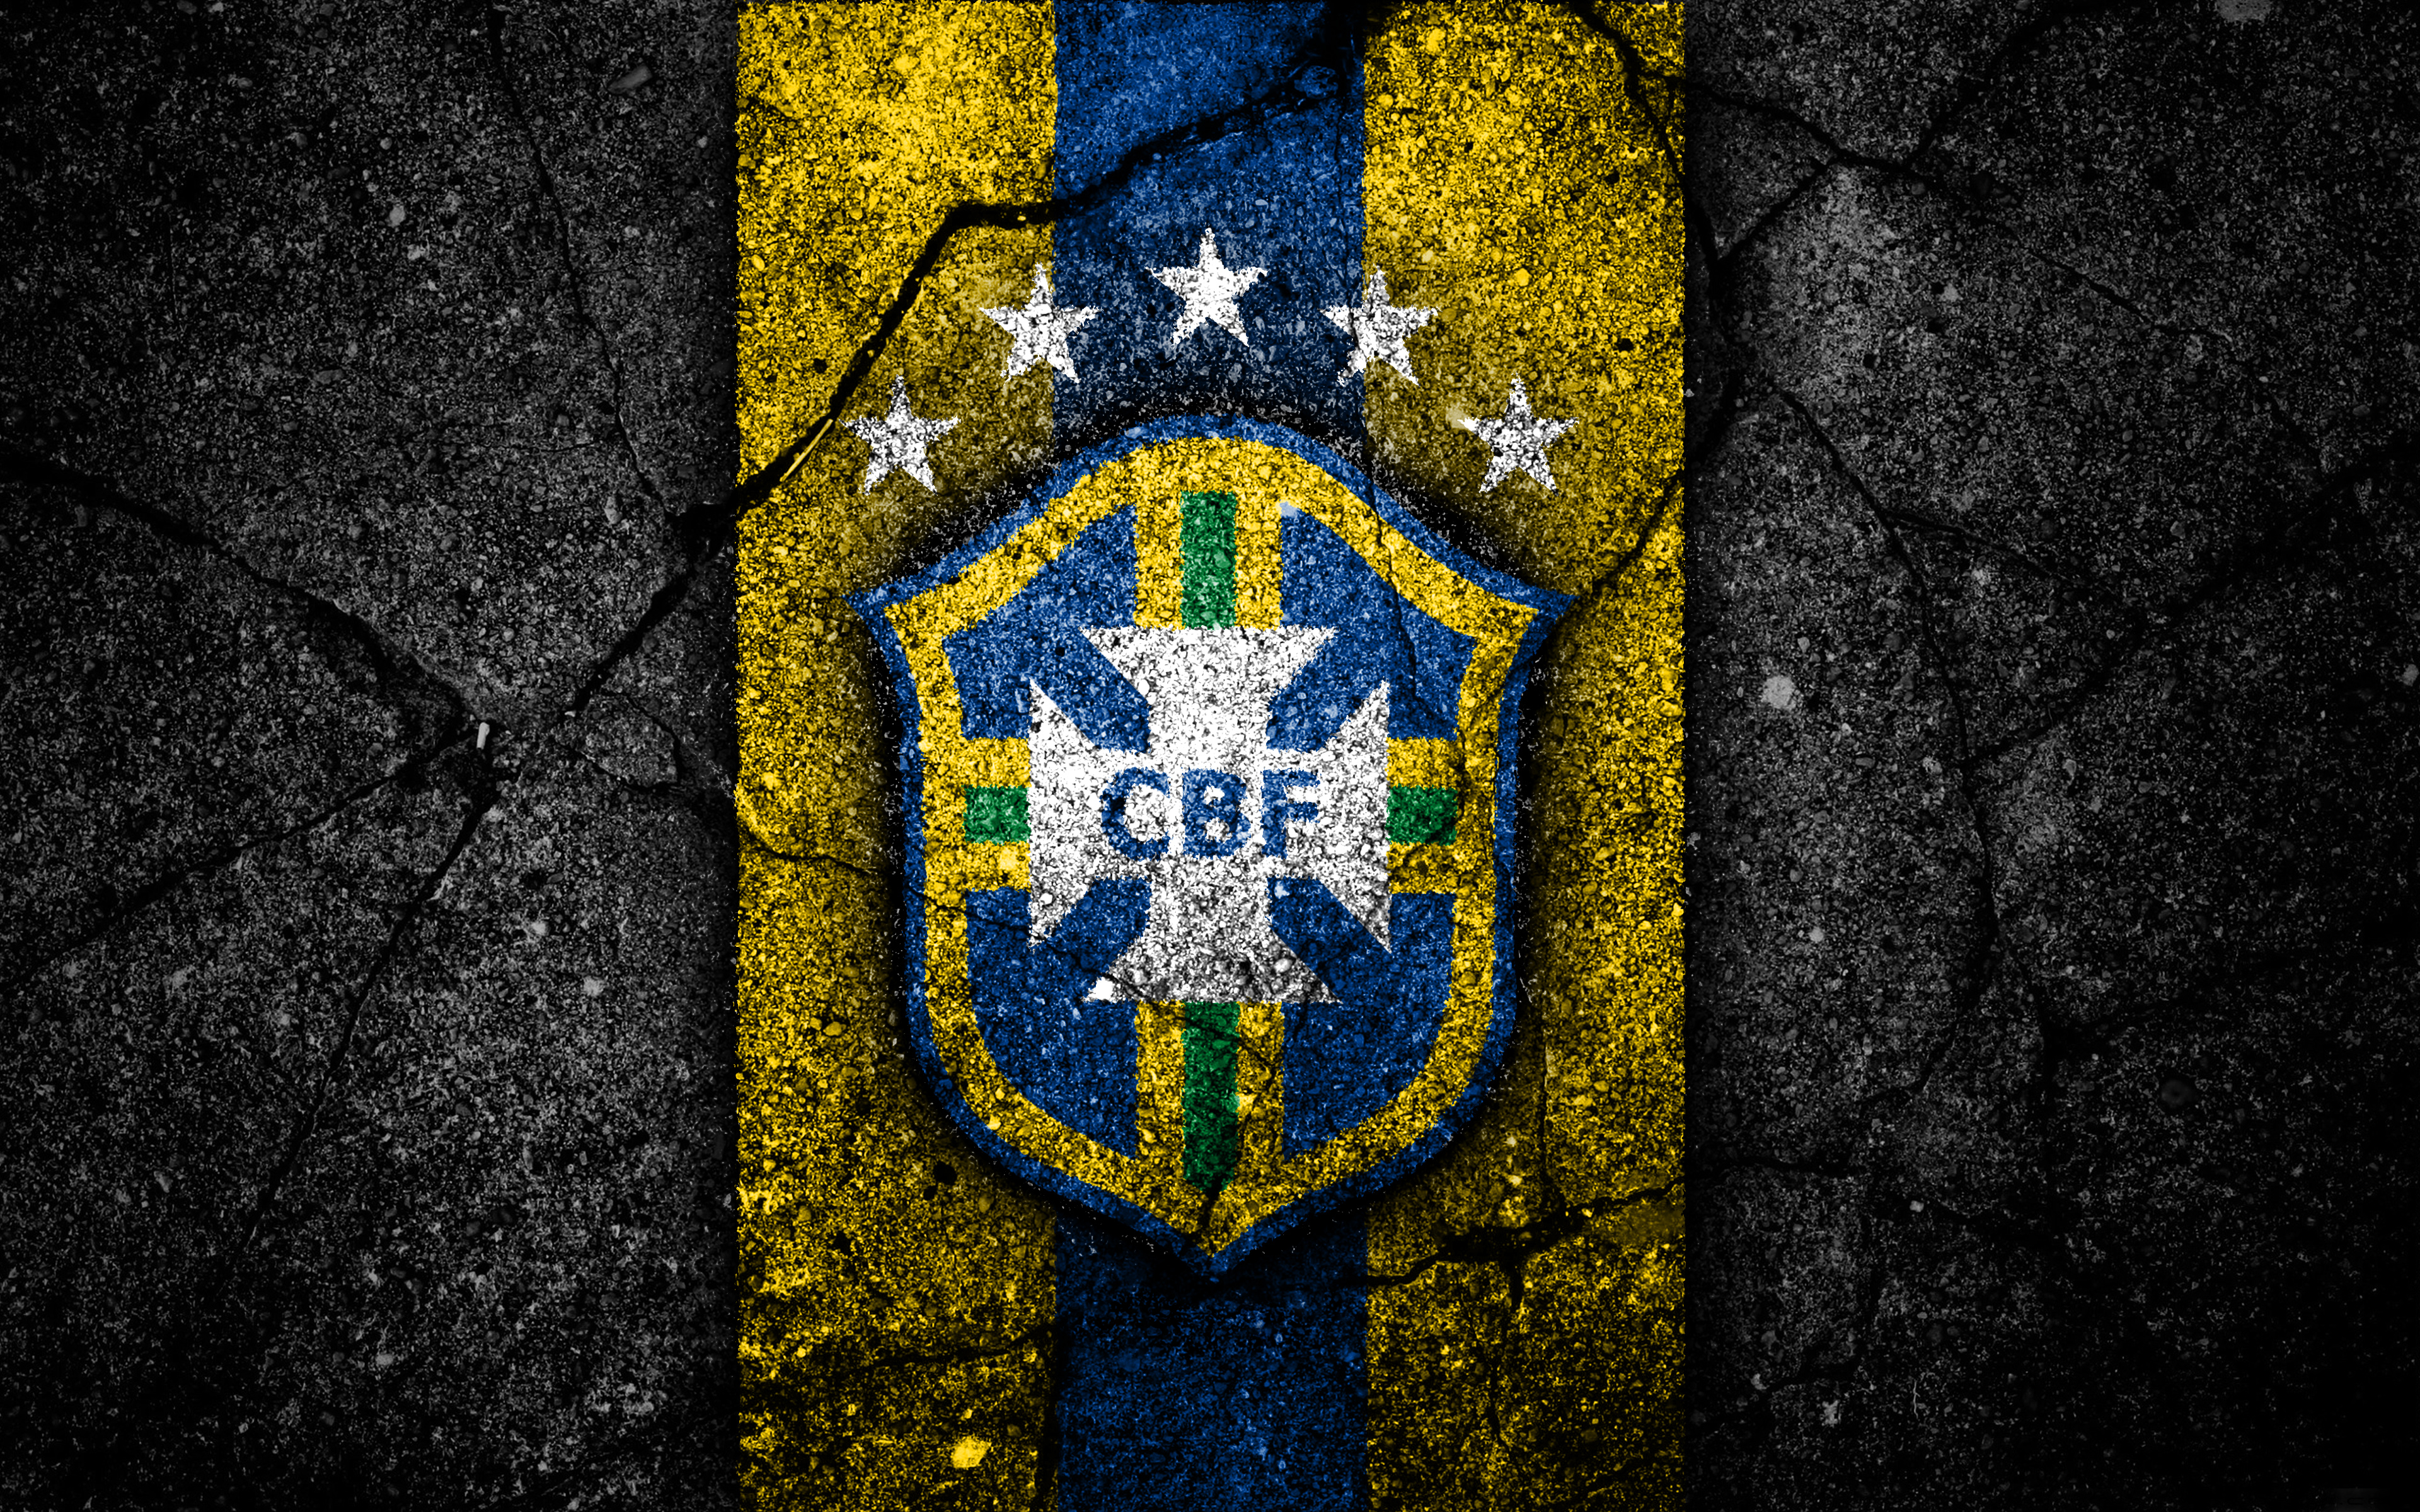 Скачать обои Сборная Бразилии По Футболу на телефон бесплатно